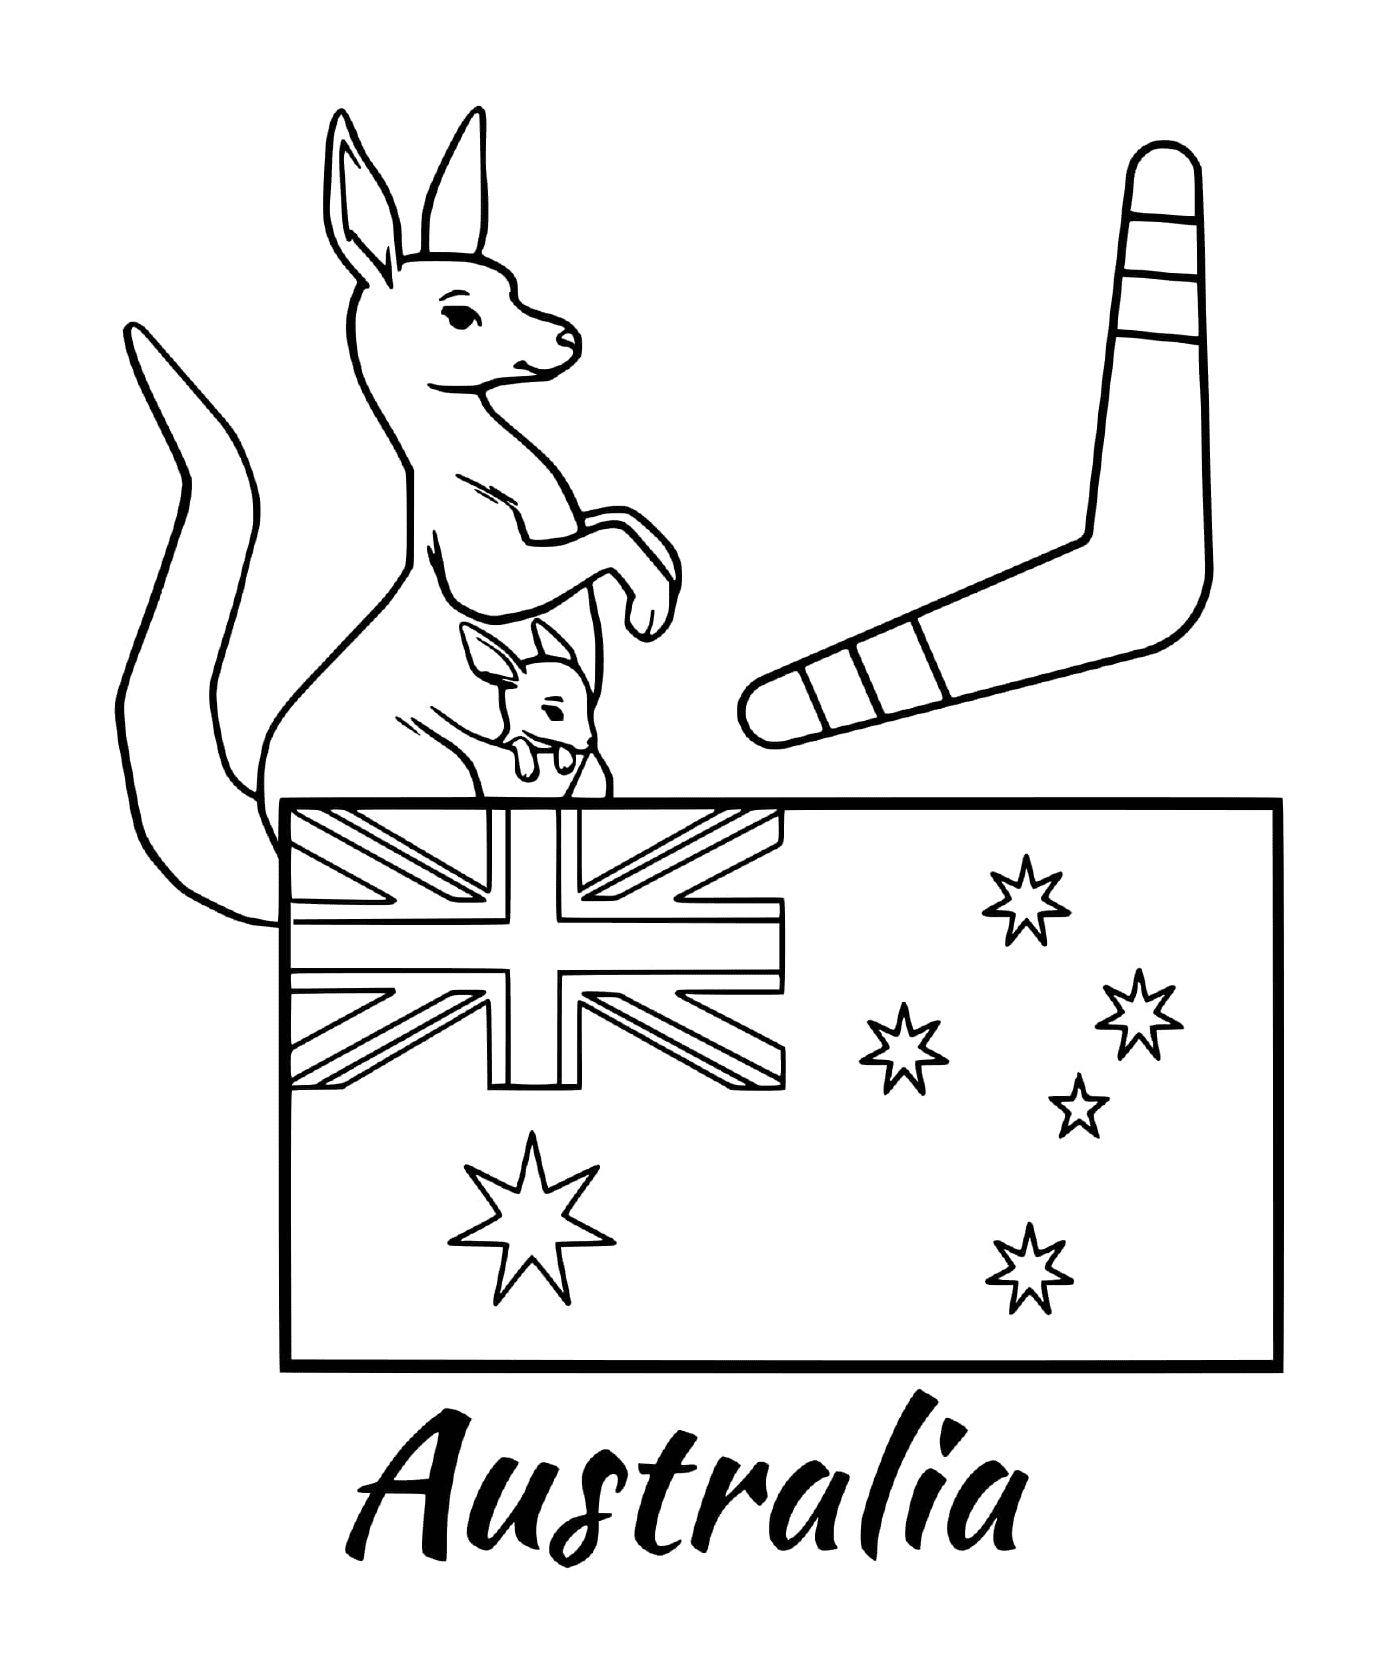  أعلام أستراليا مع بوميرانغ 